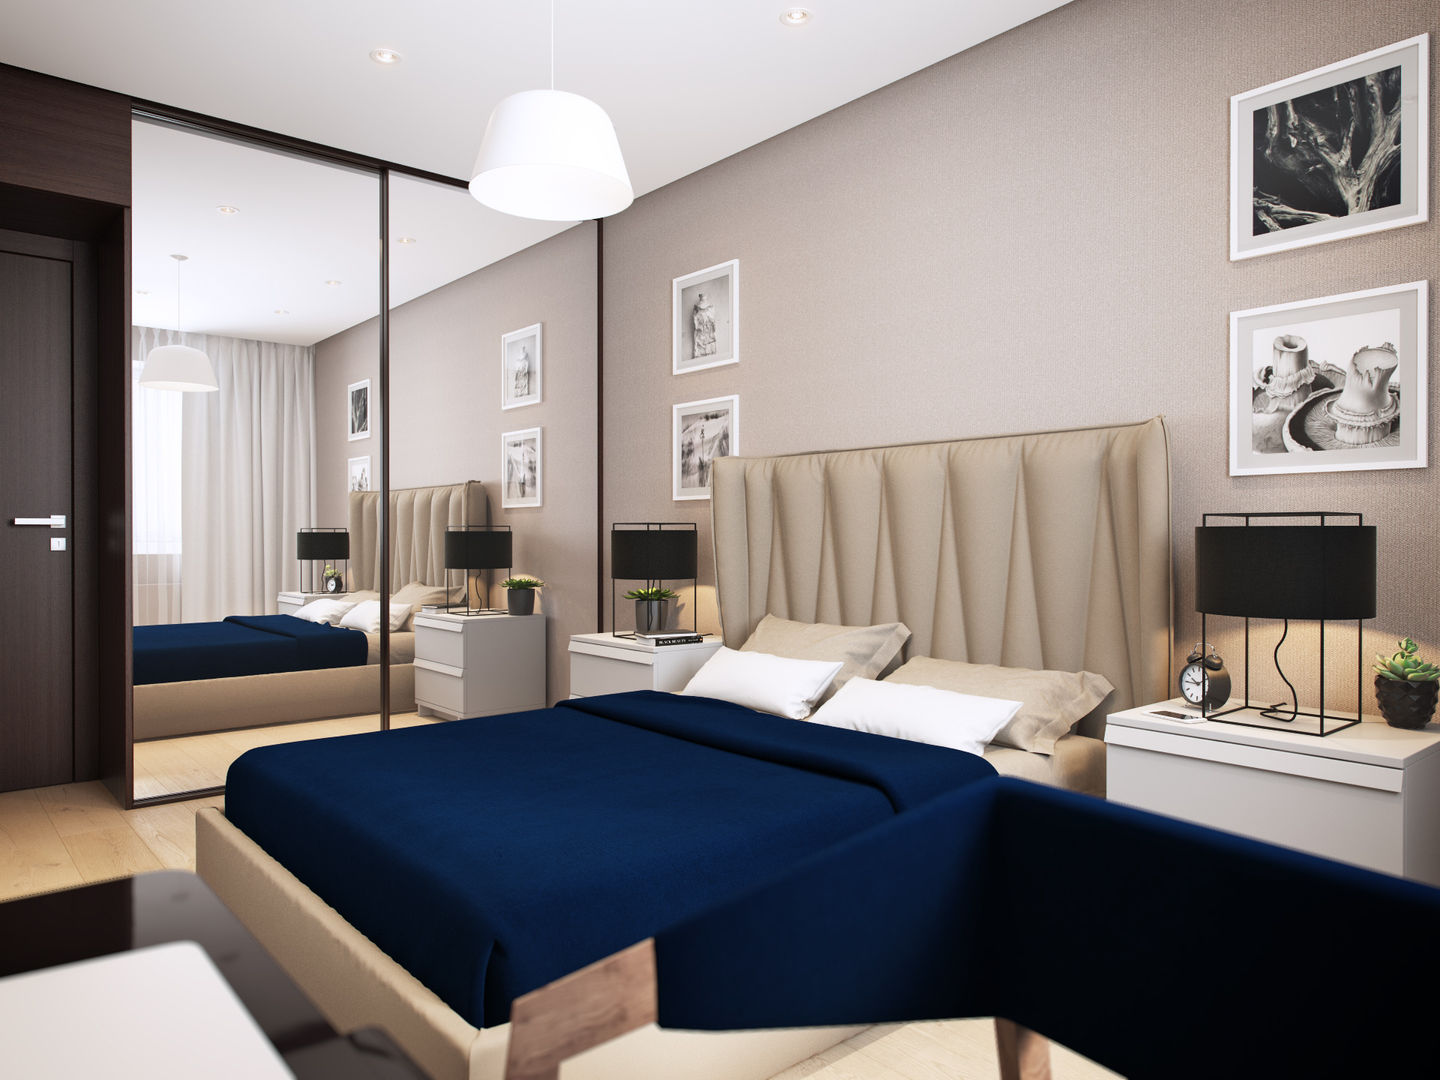 Apartment in Tomsk, EVGENY BELYAEV DESIGN EVGENY BELYAEV DESIGN モダンスタイルの寝室